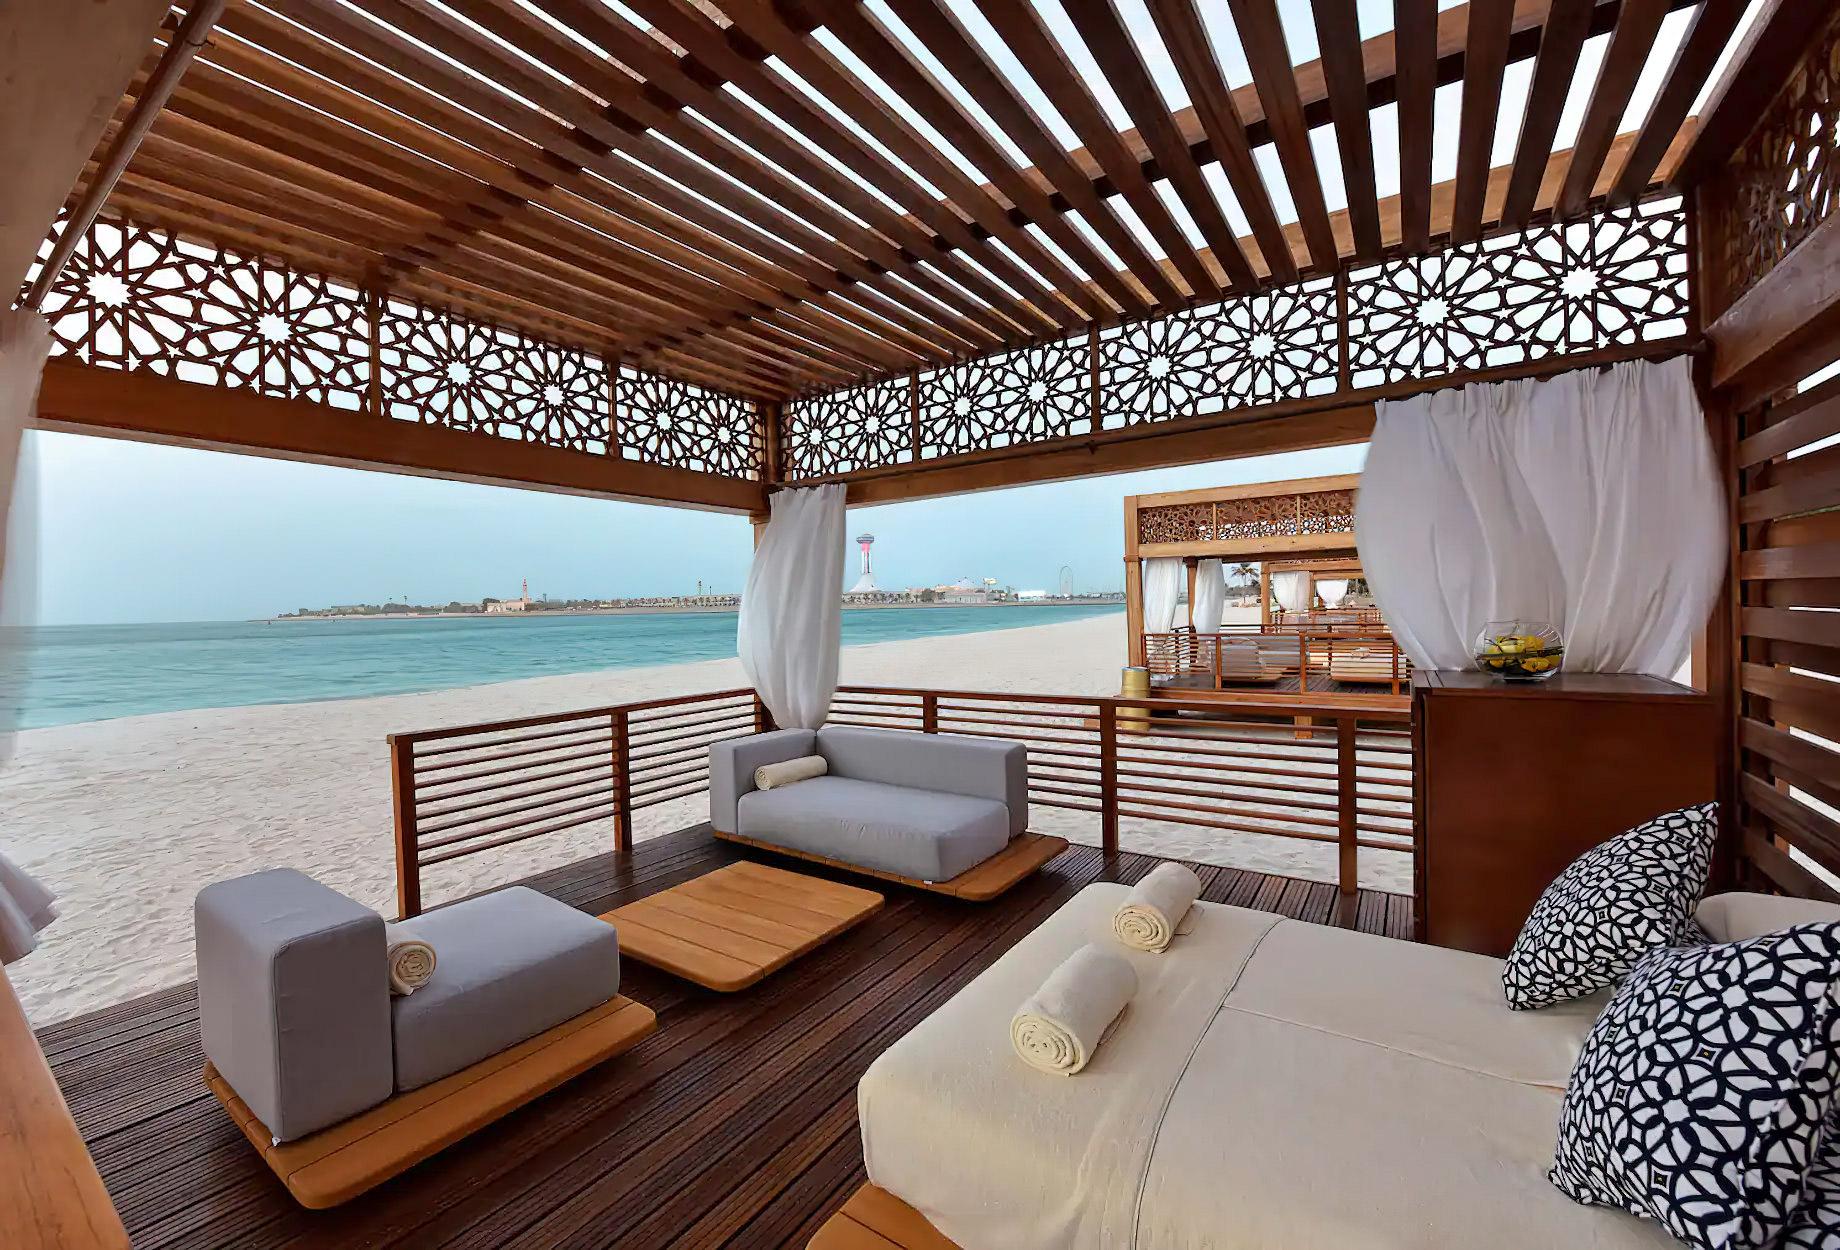 Emirates Palace Abu Dhabi Hotel – Abu Dhabi, UAE – Beach Cabana